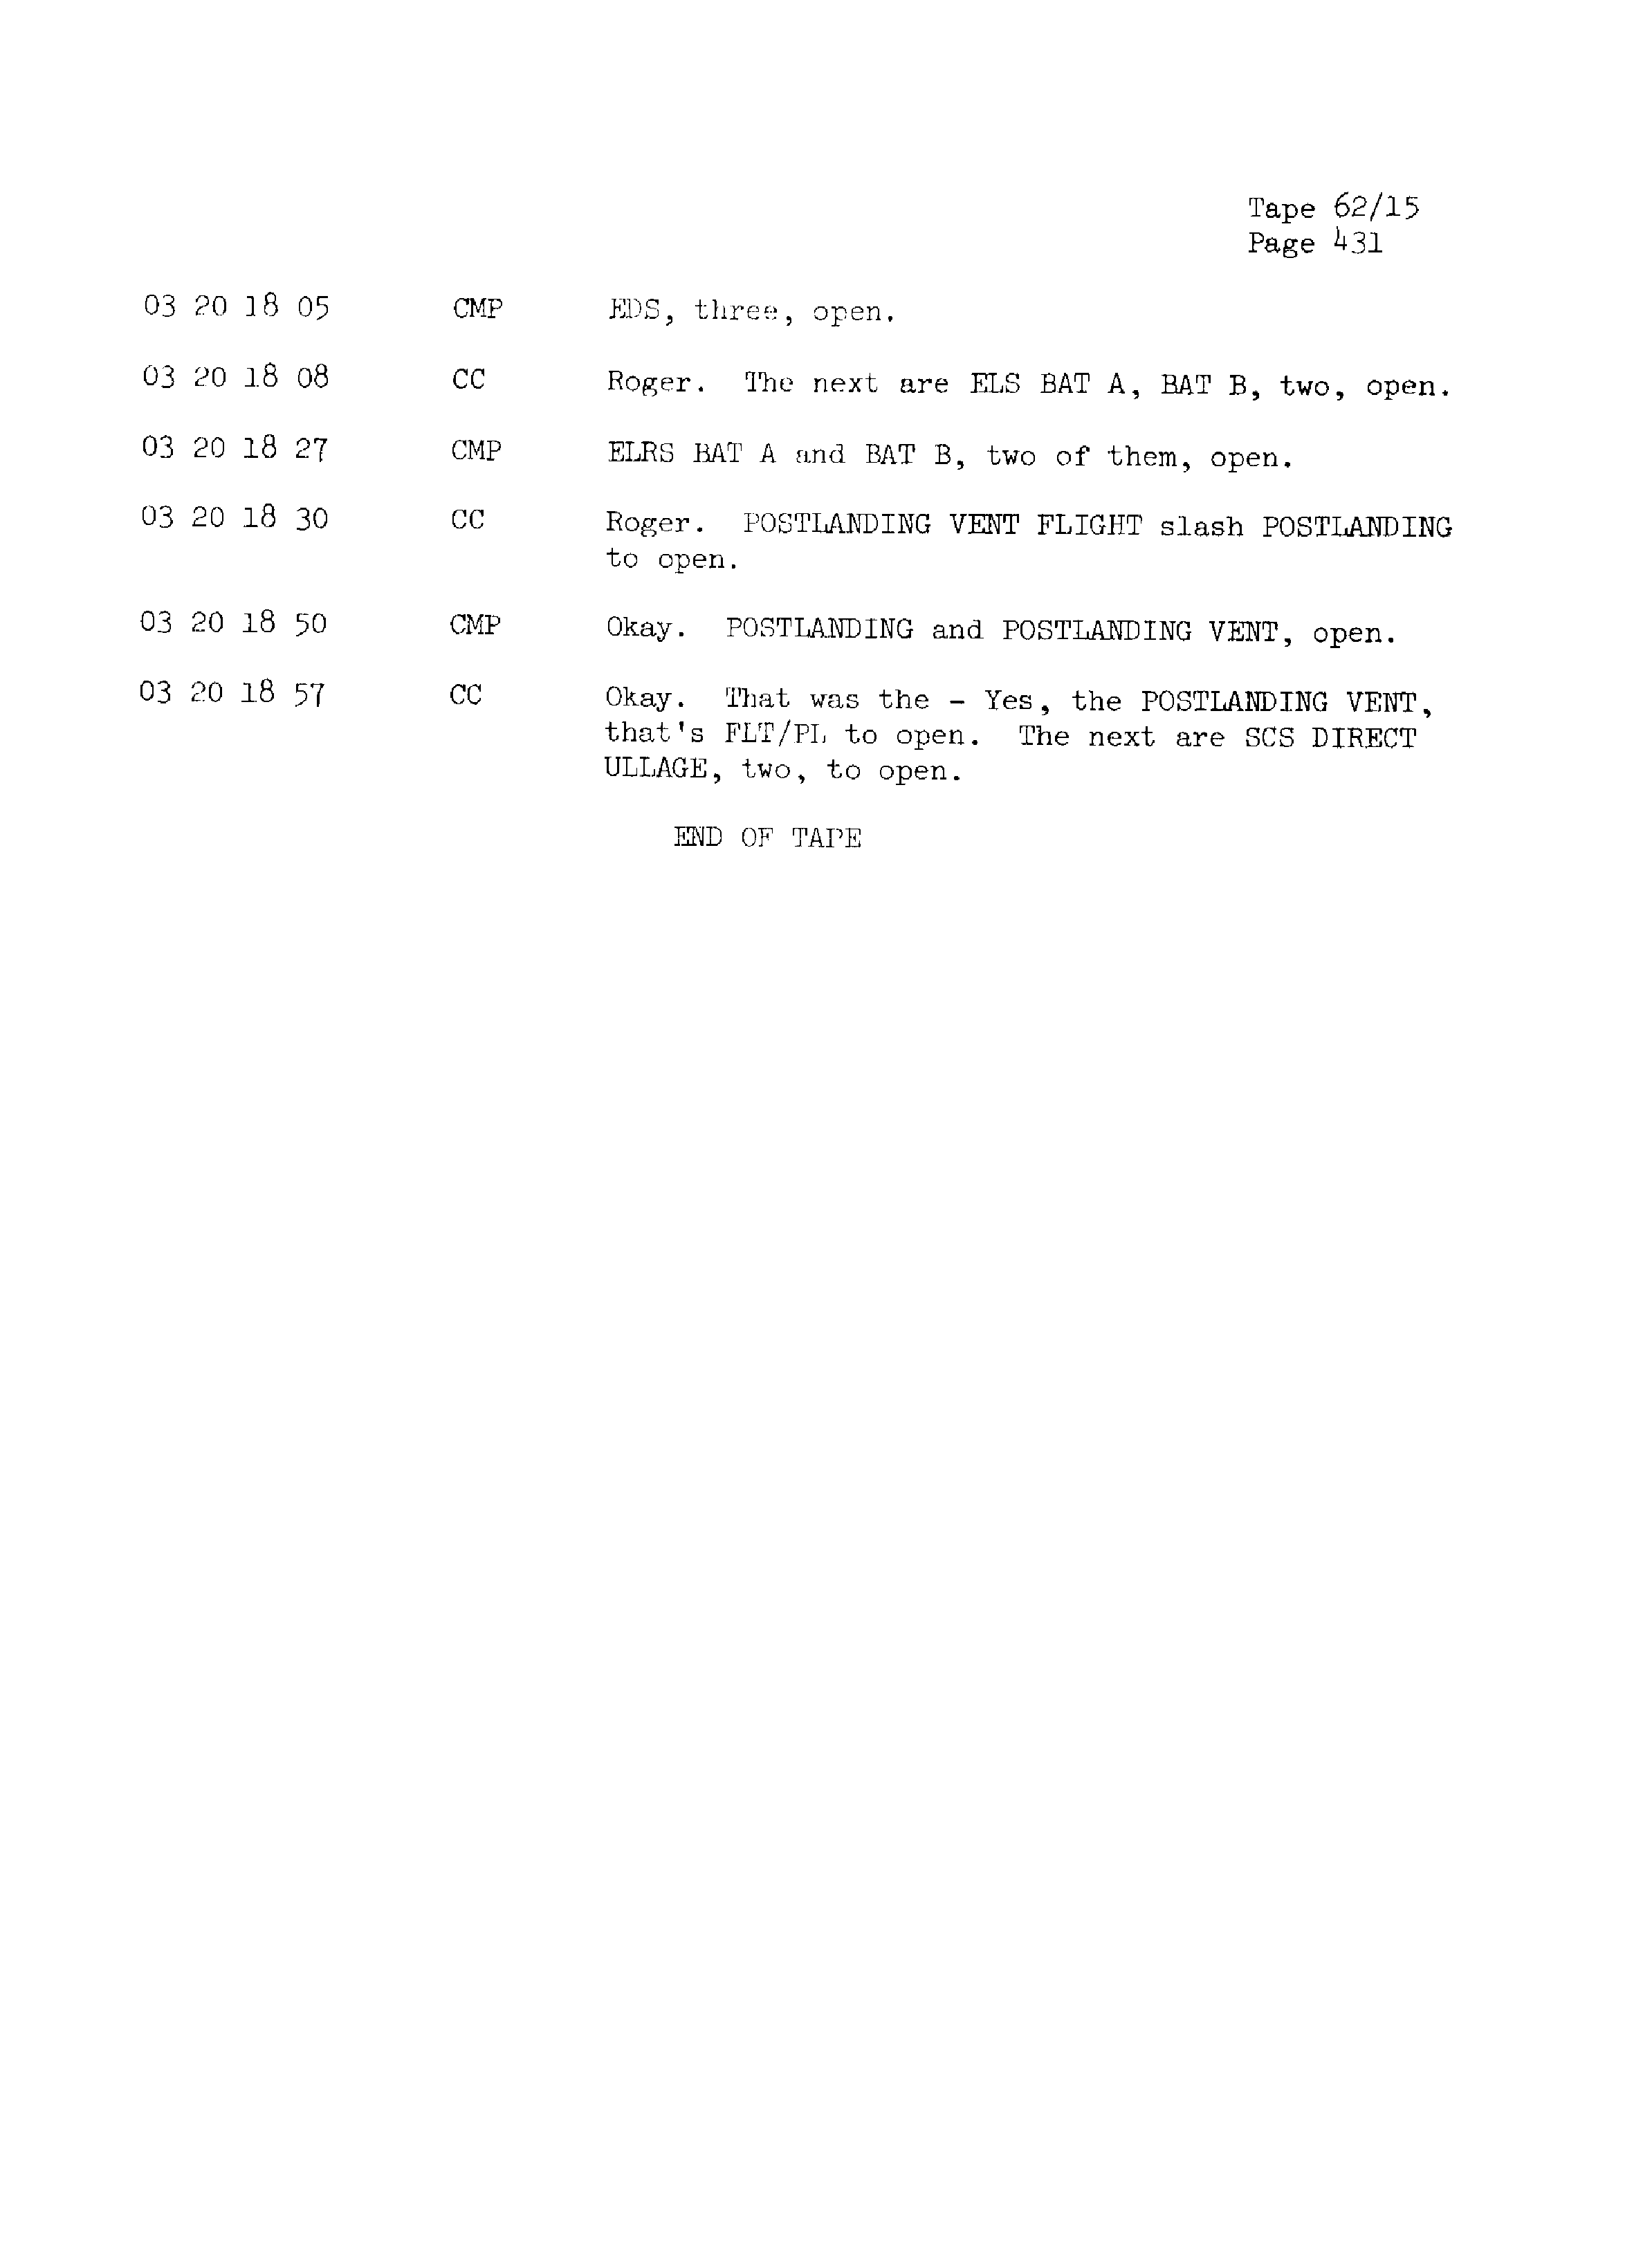 Page 438 of Apollo 13’s original transcript